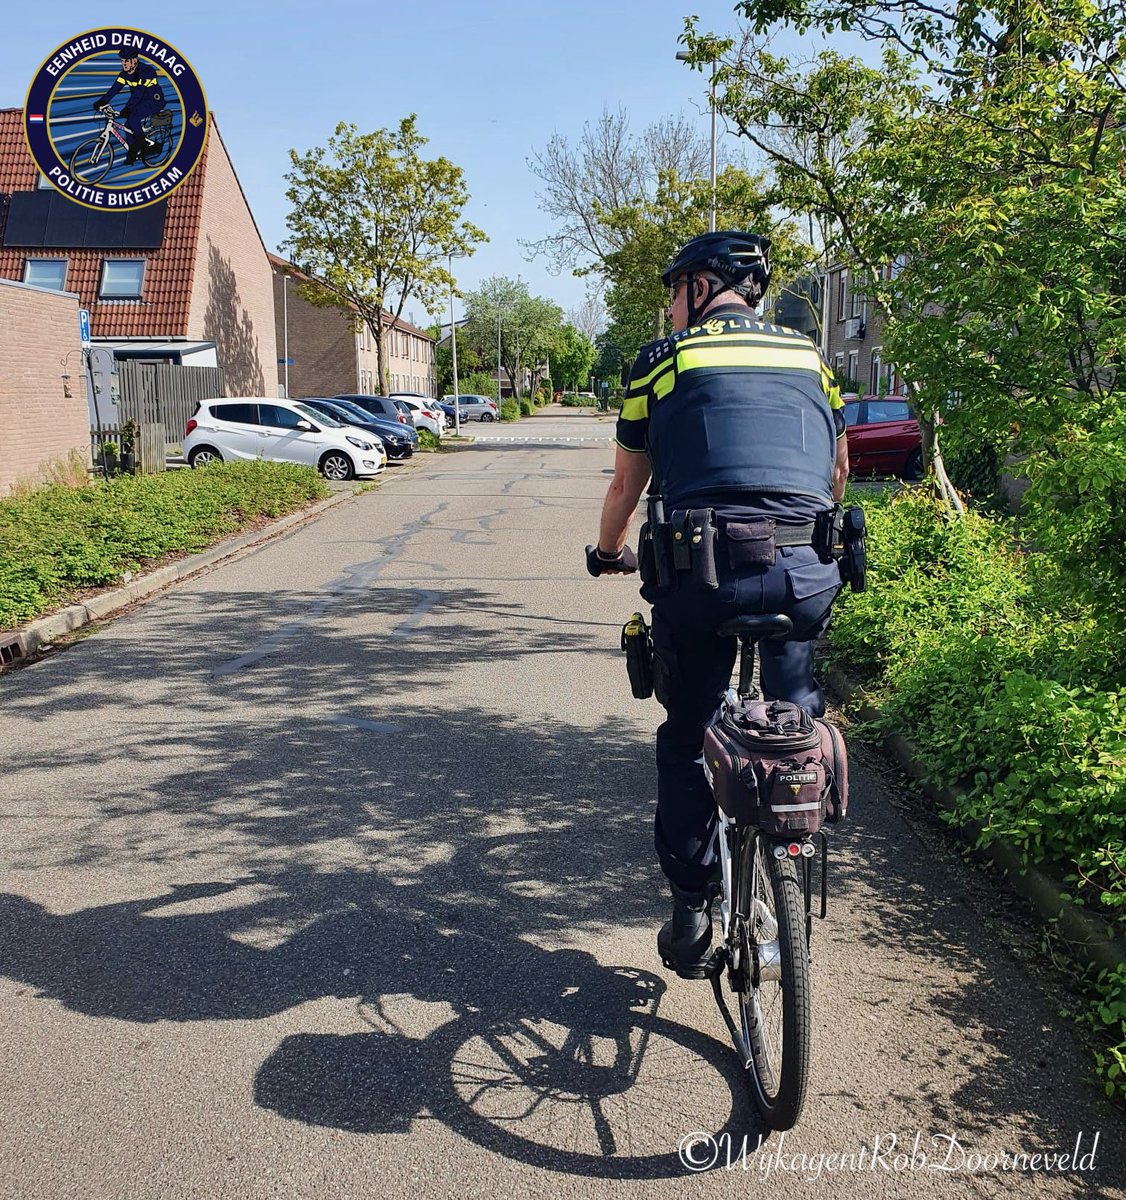 Samen met wijkhandhaver Eliza op de Bike in de Wijk. Ziet u ons? Spreek ons gerust aan 😃👍🏻
#politie #zoetermeer #deleyens